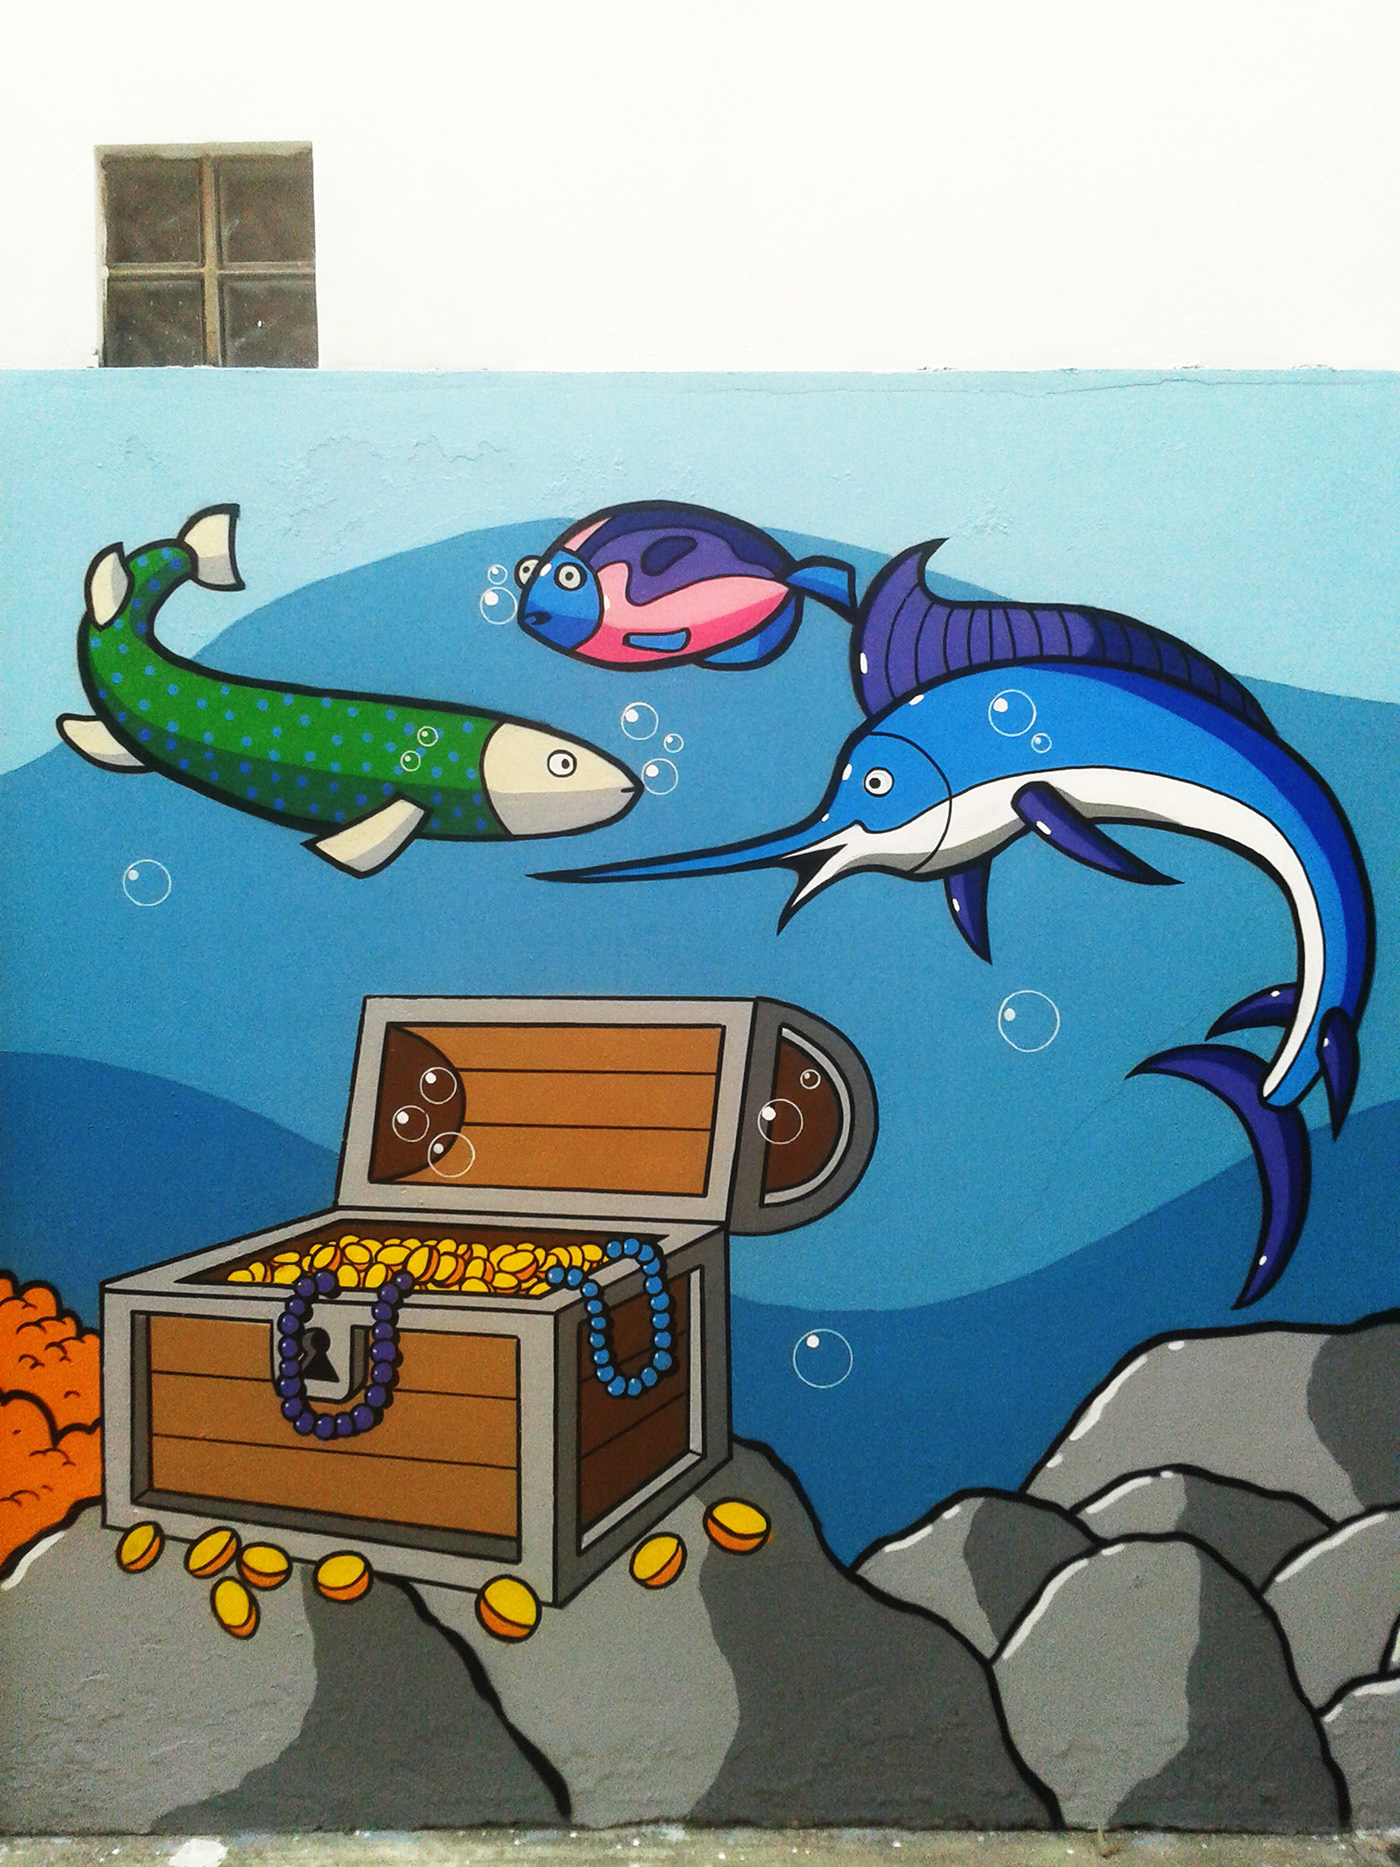 Graffiti Urbanart streetart grafite oceano praia Fundo do mar peixe agua spray